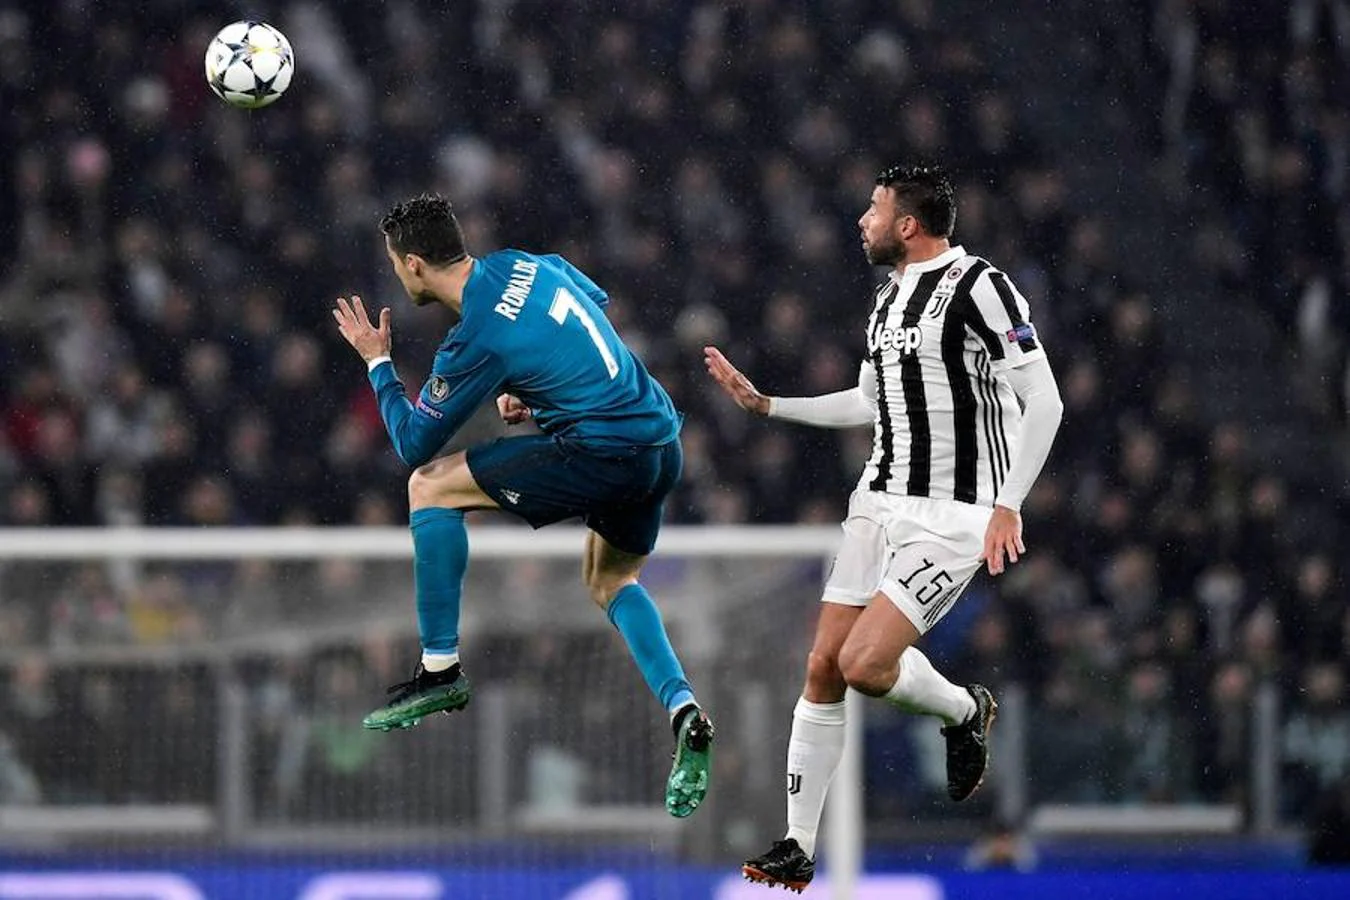 Los finalistas de la última edición de la Champions se midieron en Turín y Cristiano marcó un gol histórico nada más comenzar el duelo